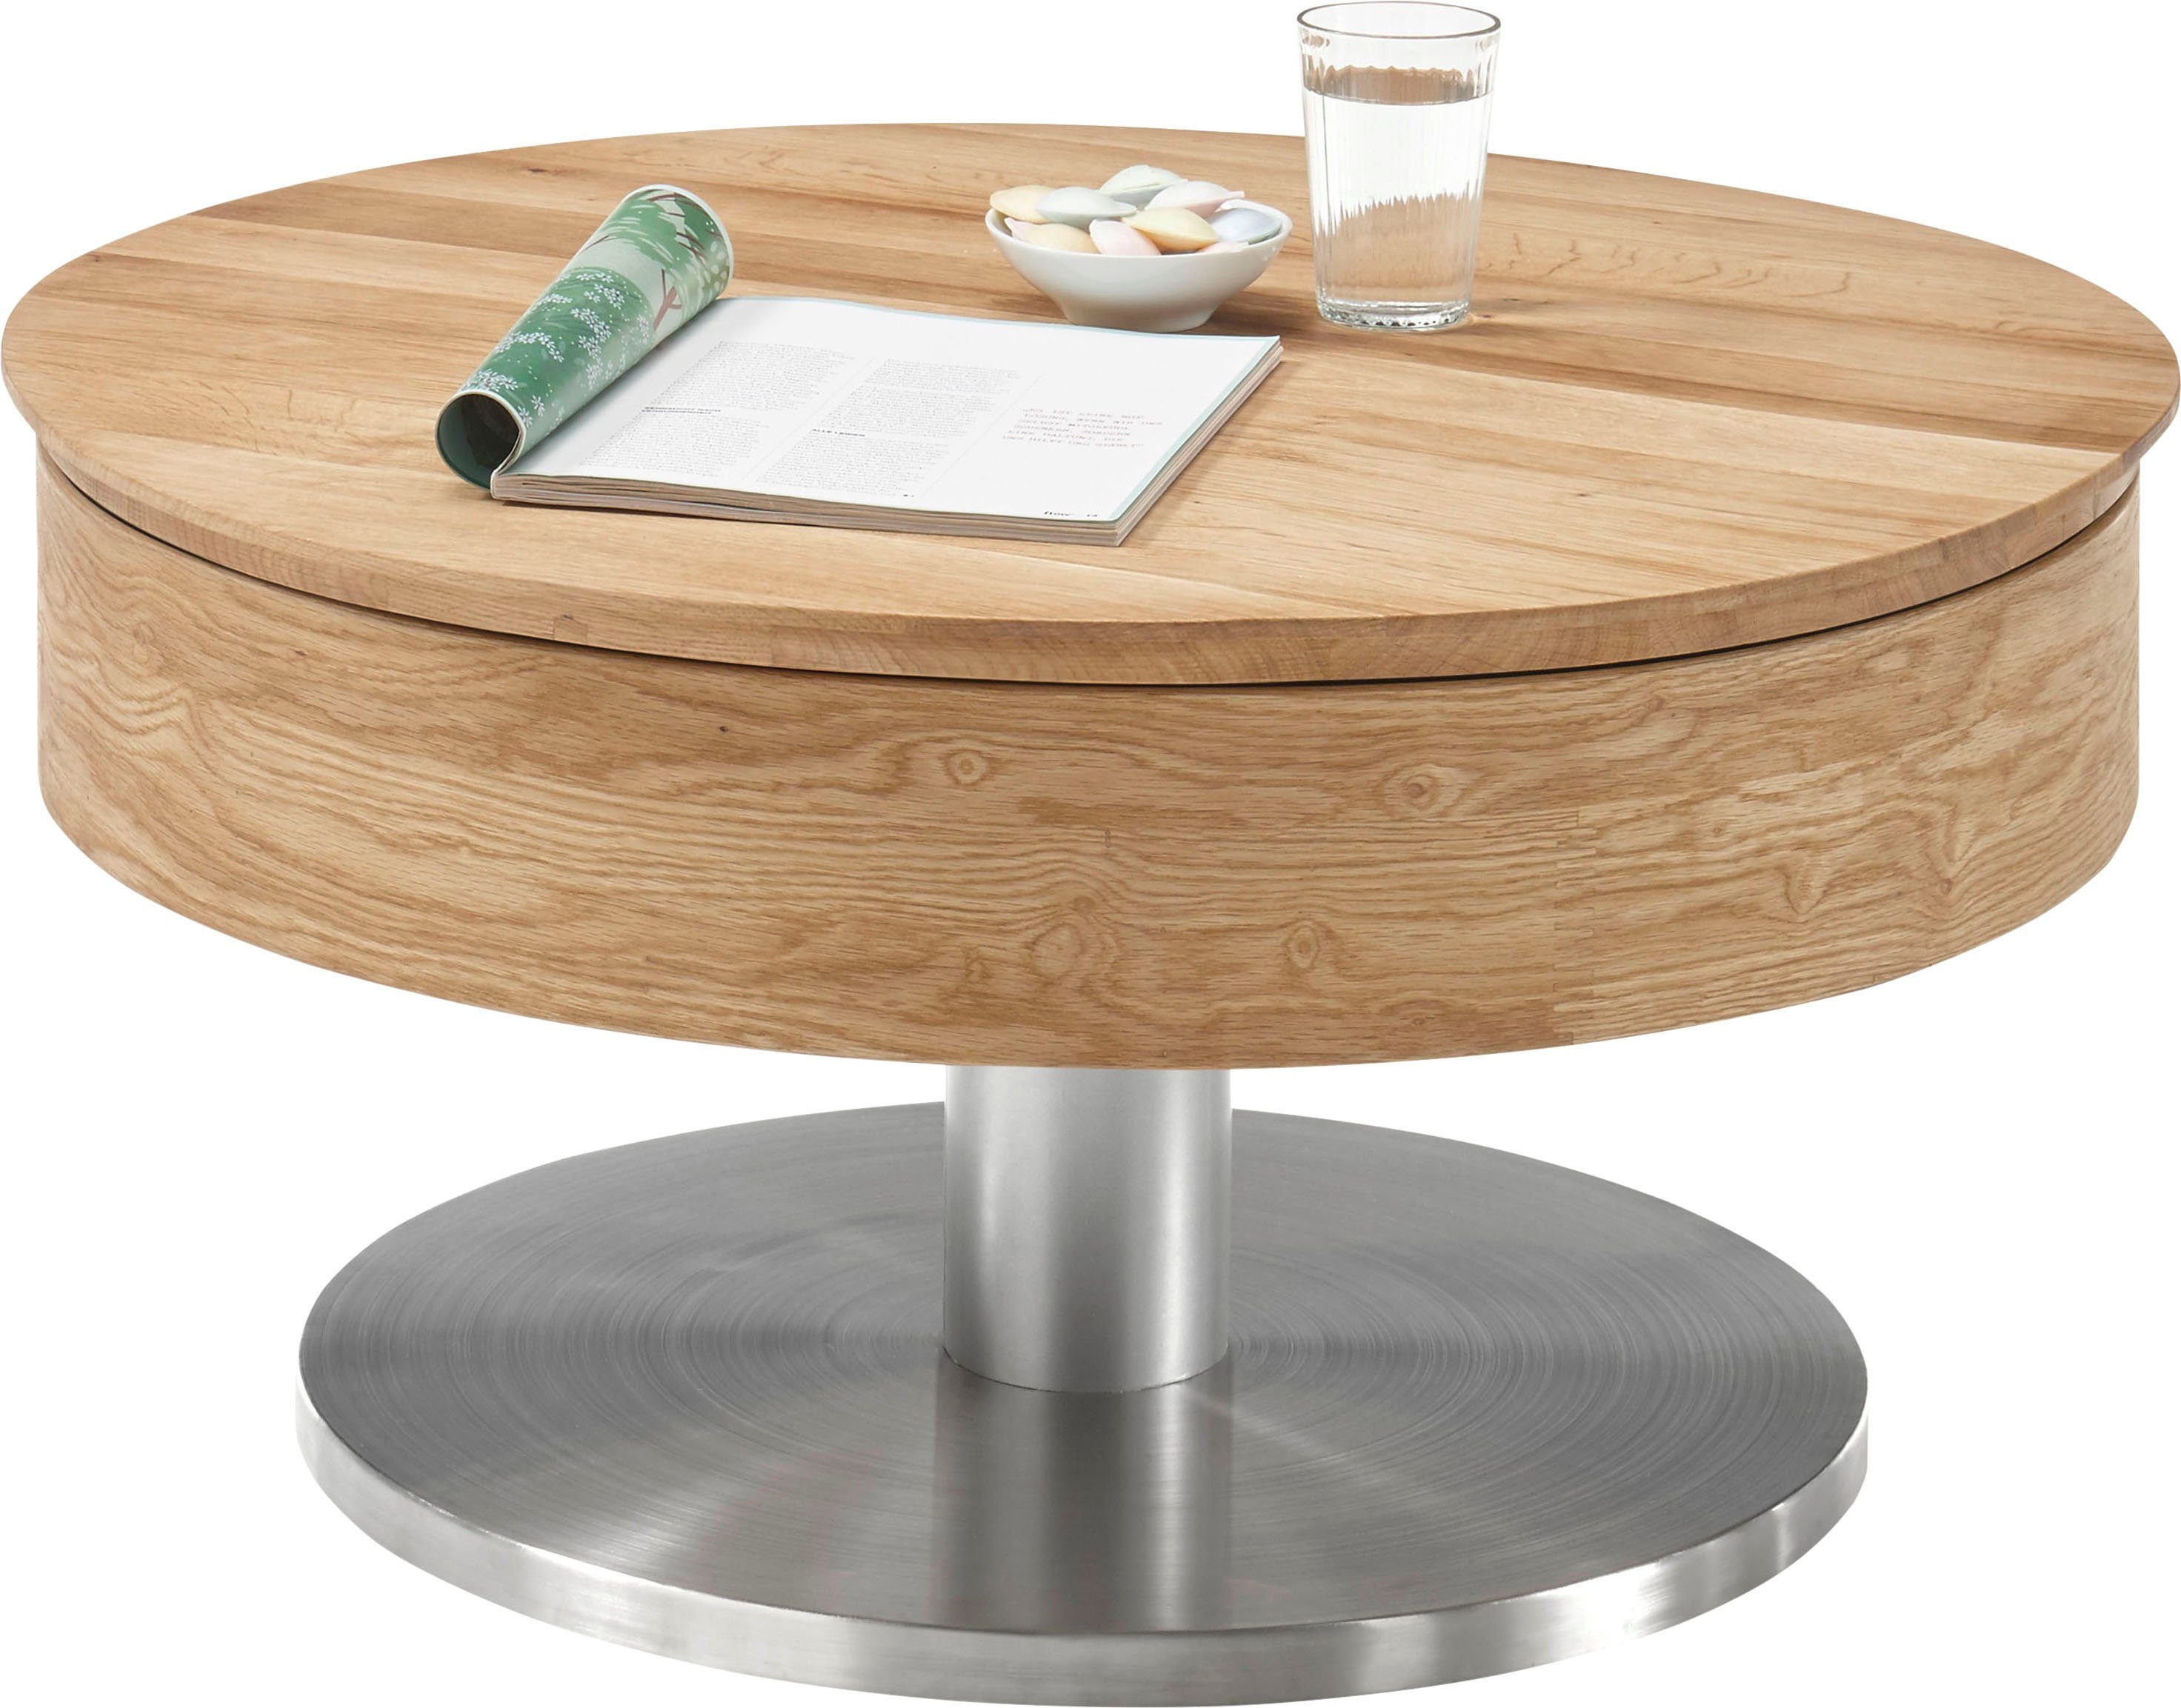 Asteiche mit Tischplatte | furniture Suva, Asteiche Innenfach drehbar MCA Couchtisch furniert